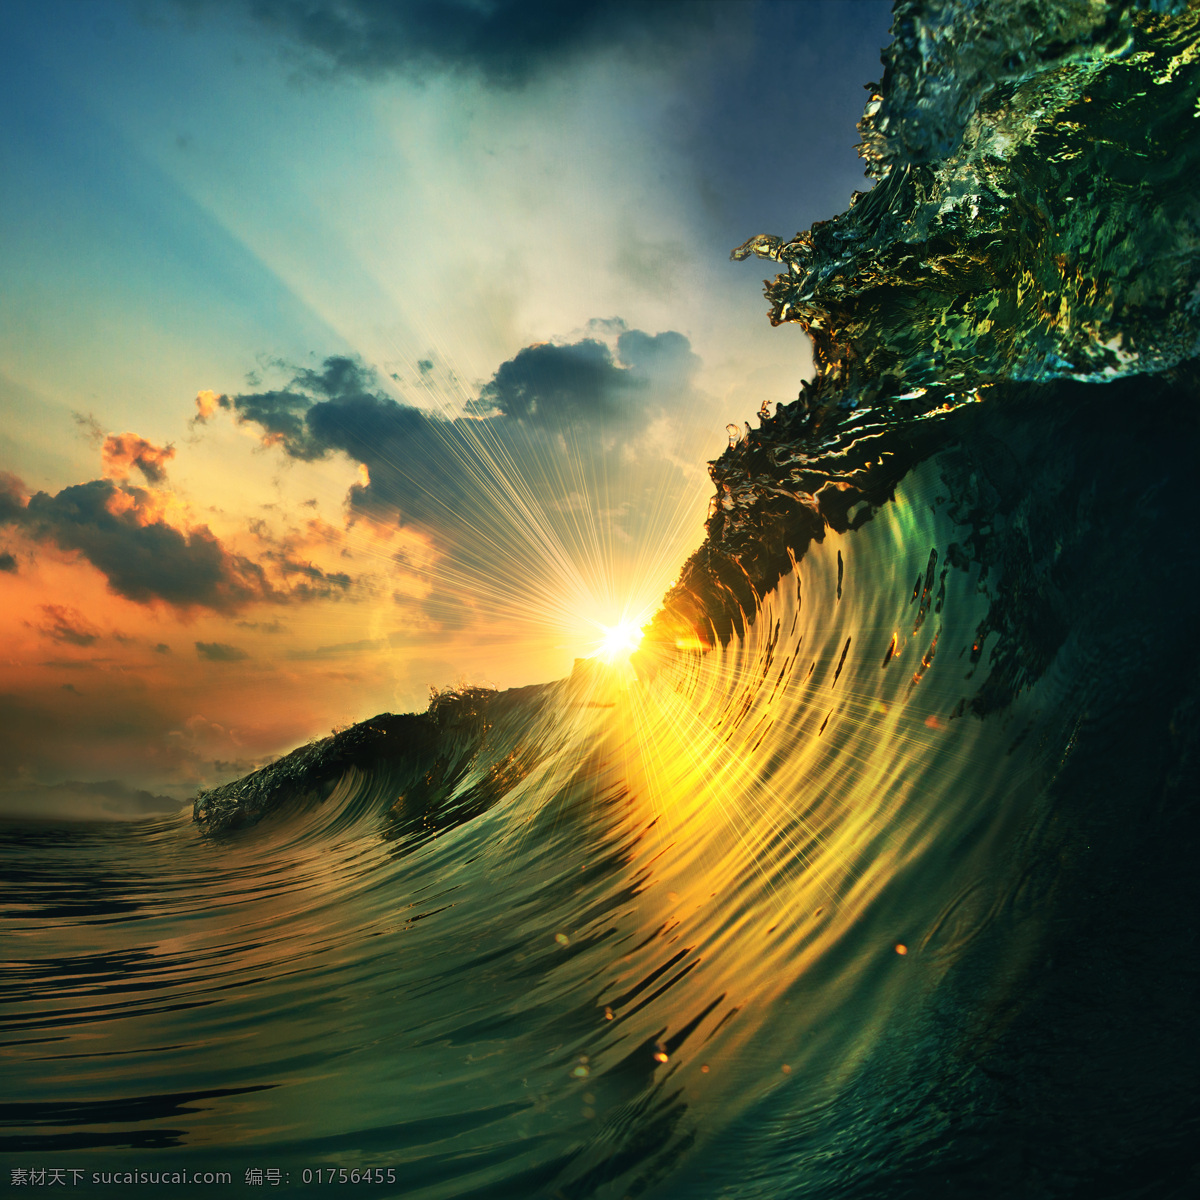 海浪高清图片 唯美 海浪 高清 巨大的浪花 光线 阳光 晚霞 夕阳 黑色